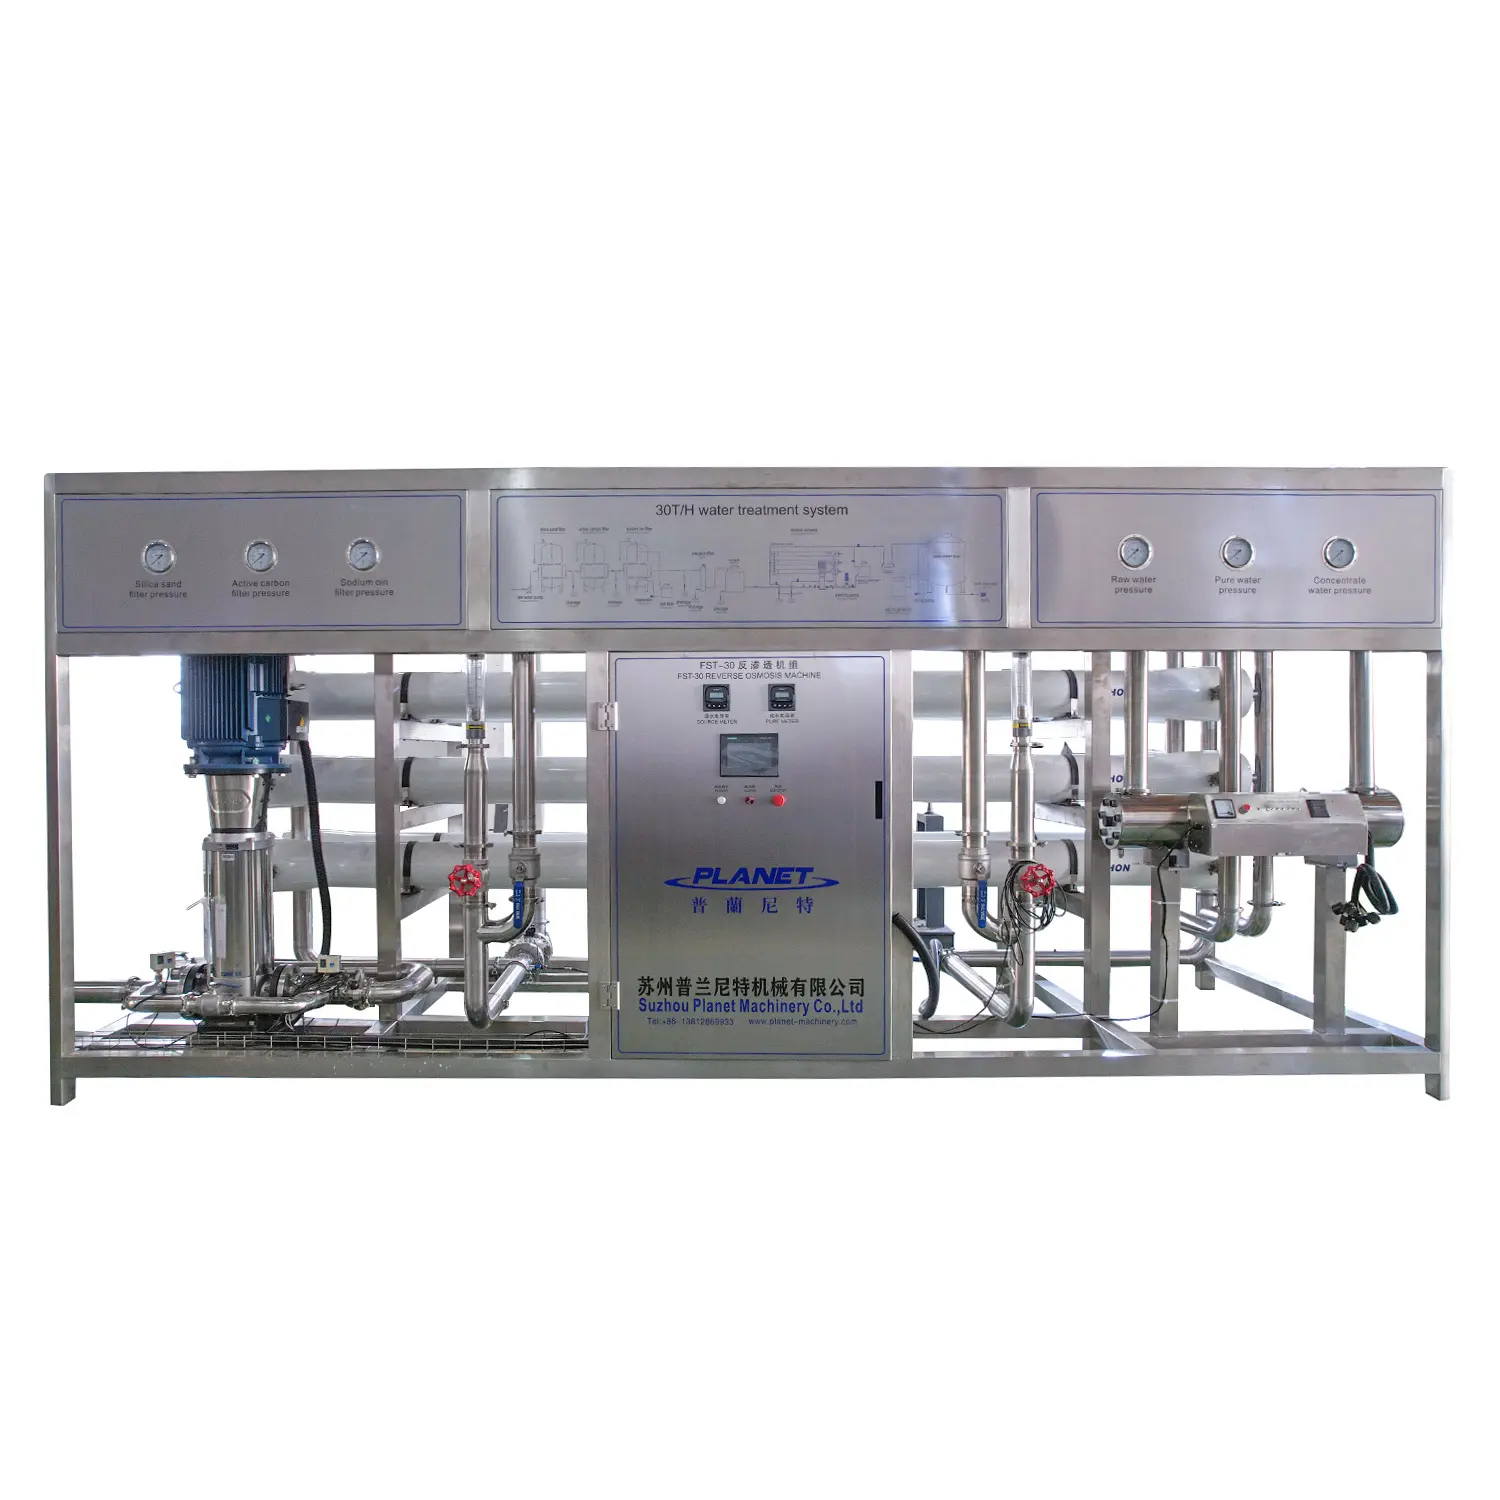 Sistema di filtrazione dell'impianto di trattamento delle acque commerciale del sistema di osmosi inversa del sistema di trattamento delle acque del ro industriale della macchina del pianeta